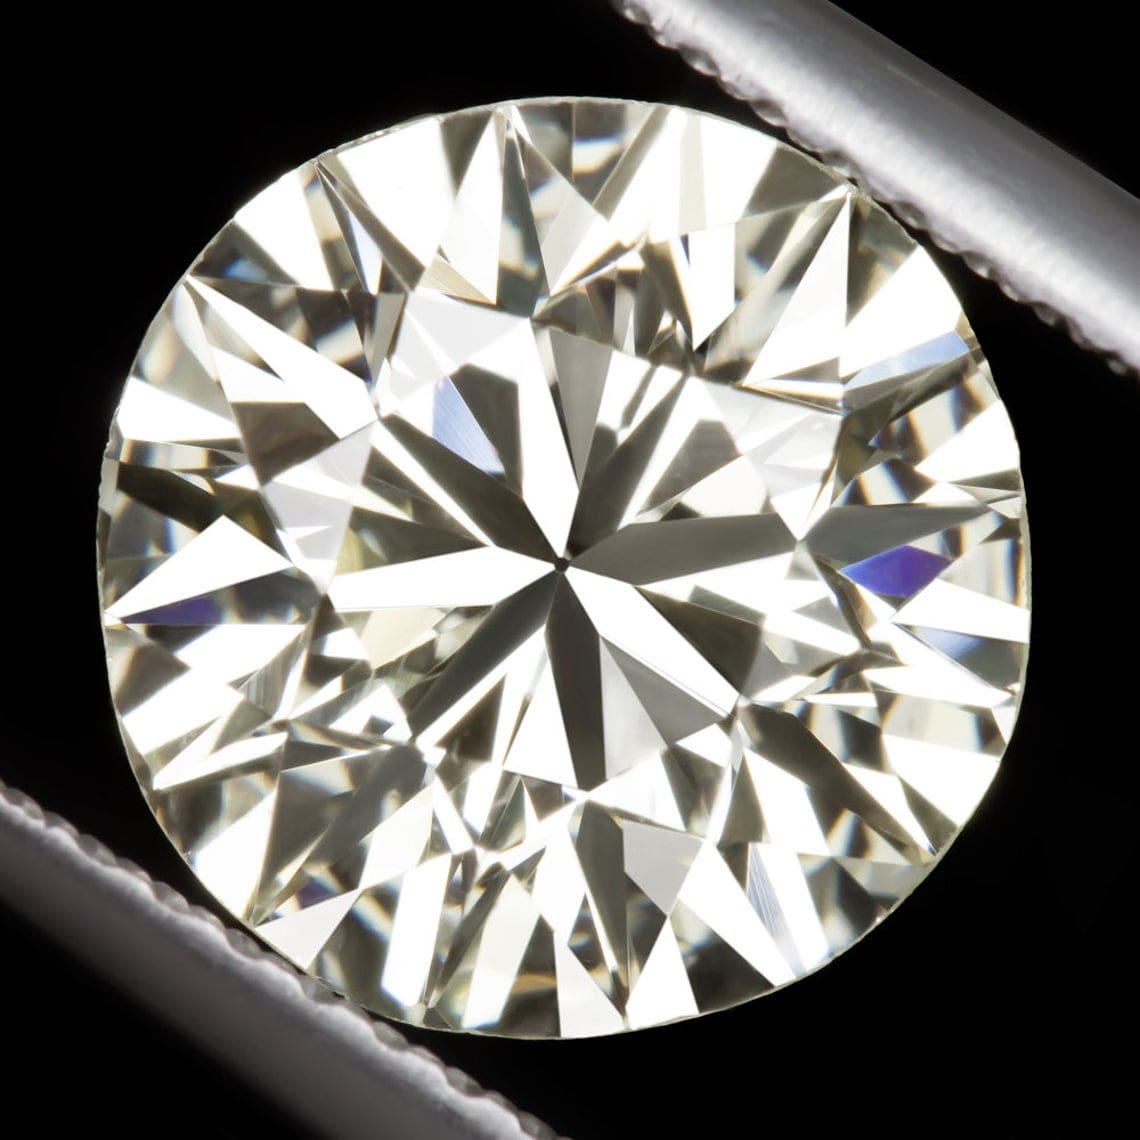 Comment distinguer un vrai diamant d'un faux